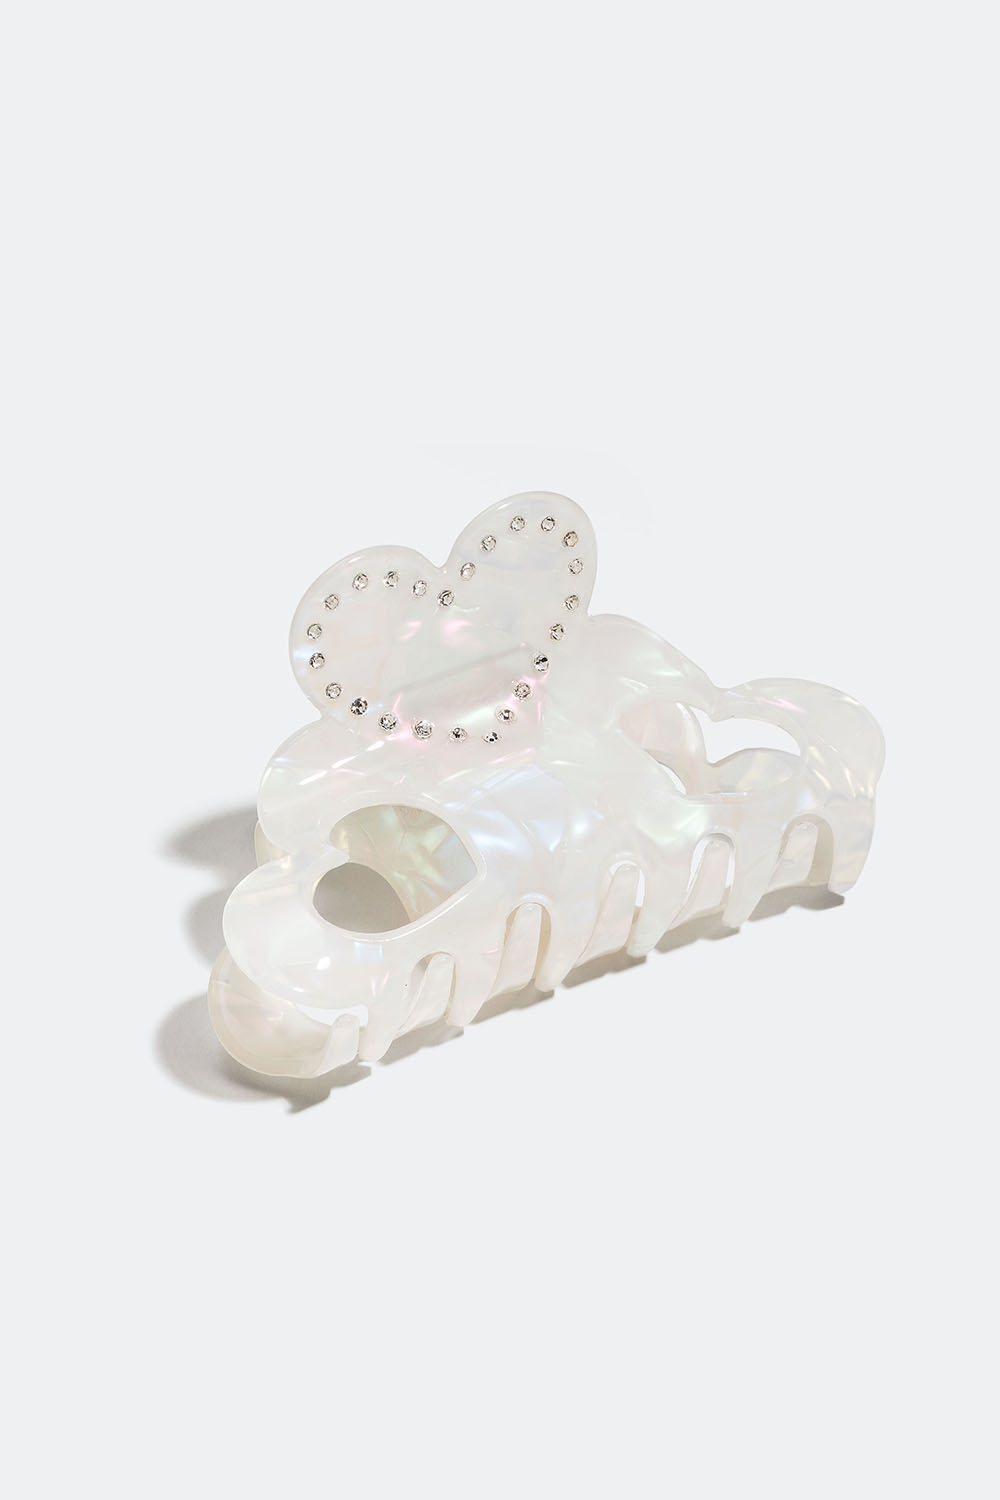 Valkoinen hiussolki sydämellä ja marmoroidulla kuviolla ryhmässä Hiustuotteet / Hiuspinnit ja -klipsit / Hiusklipsit @ Glitter (331001500100)